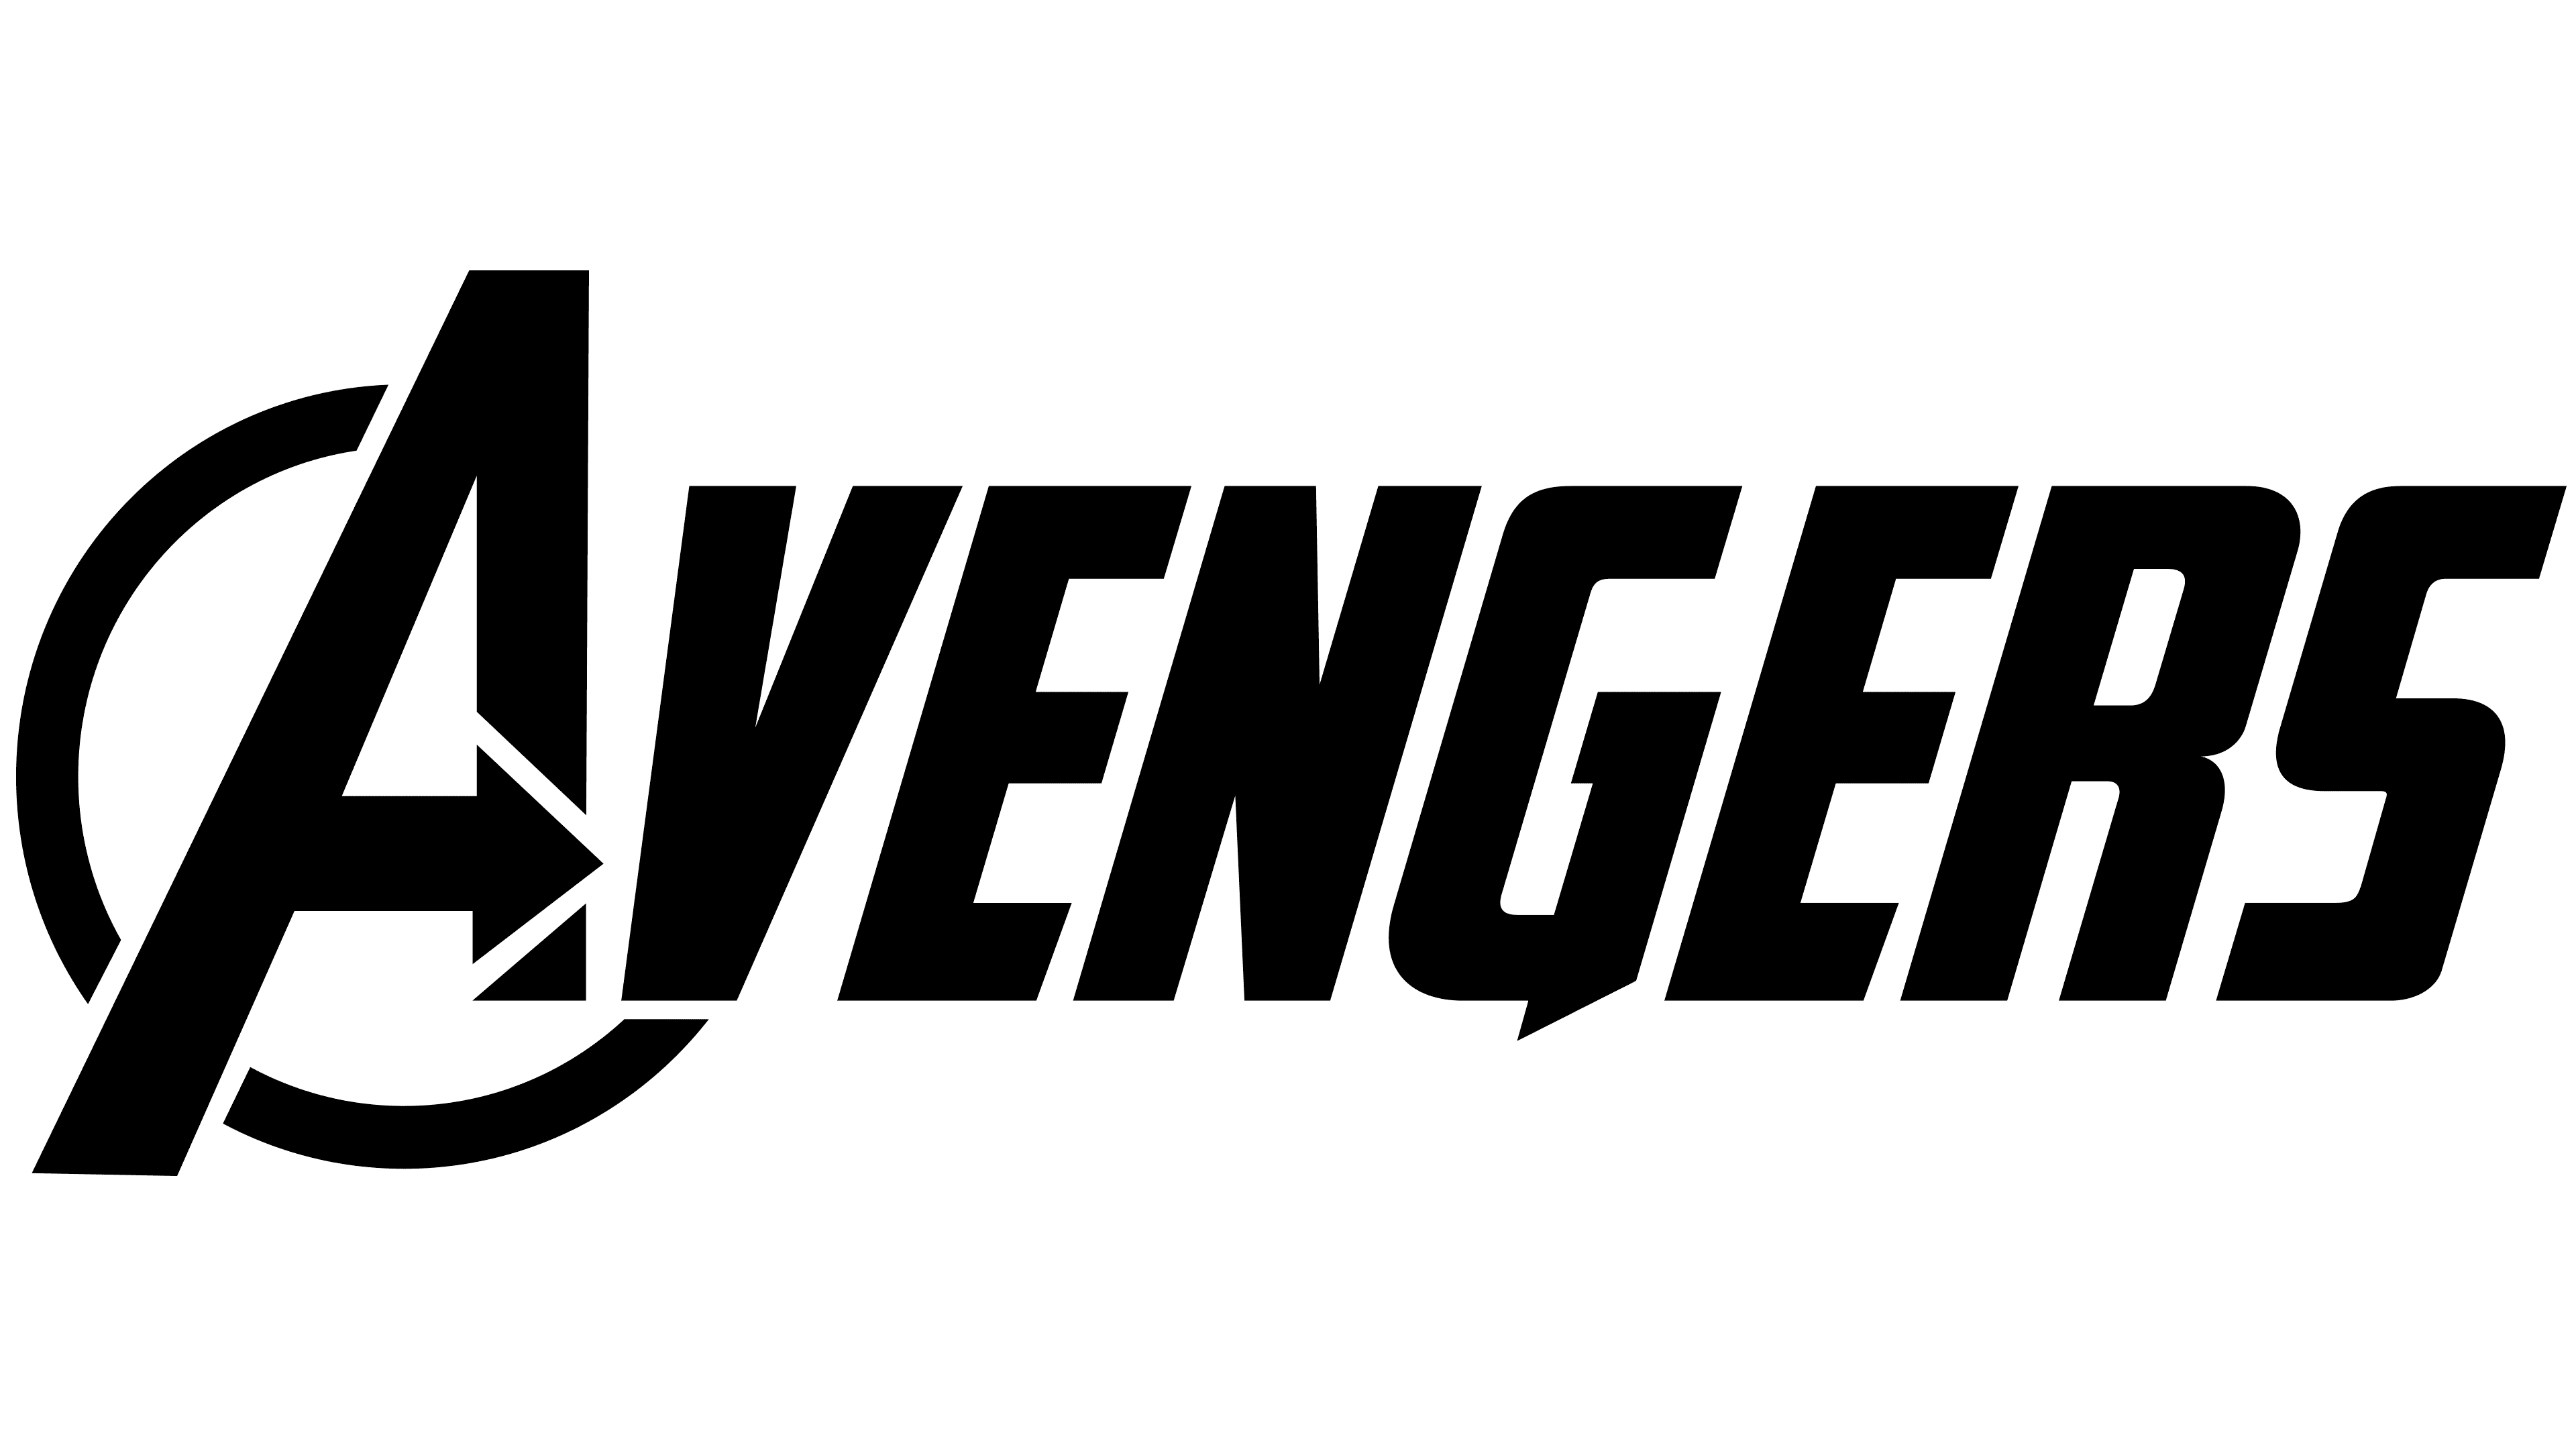 Avenger Logo PNG Photo Image